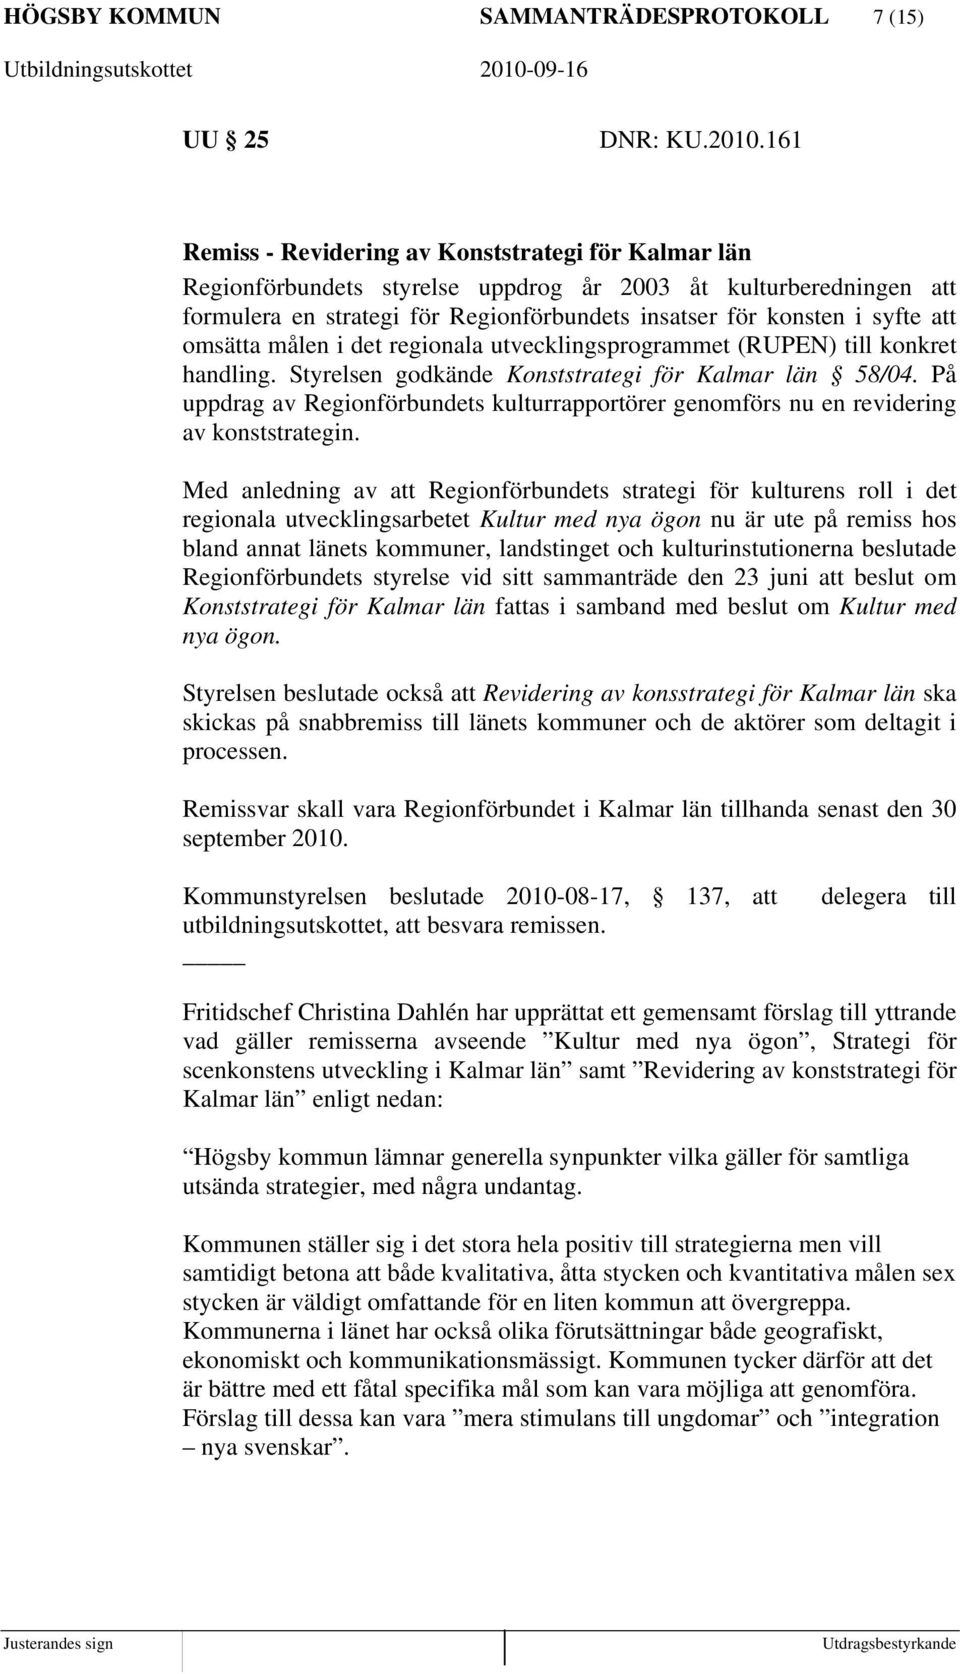 omsätta målen i det regionala utvecklingsprogrammet (RUPEN) till konkret handling. Styrelsen godkände Konststrategi för Kalmar län 58/04.